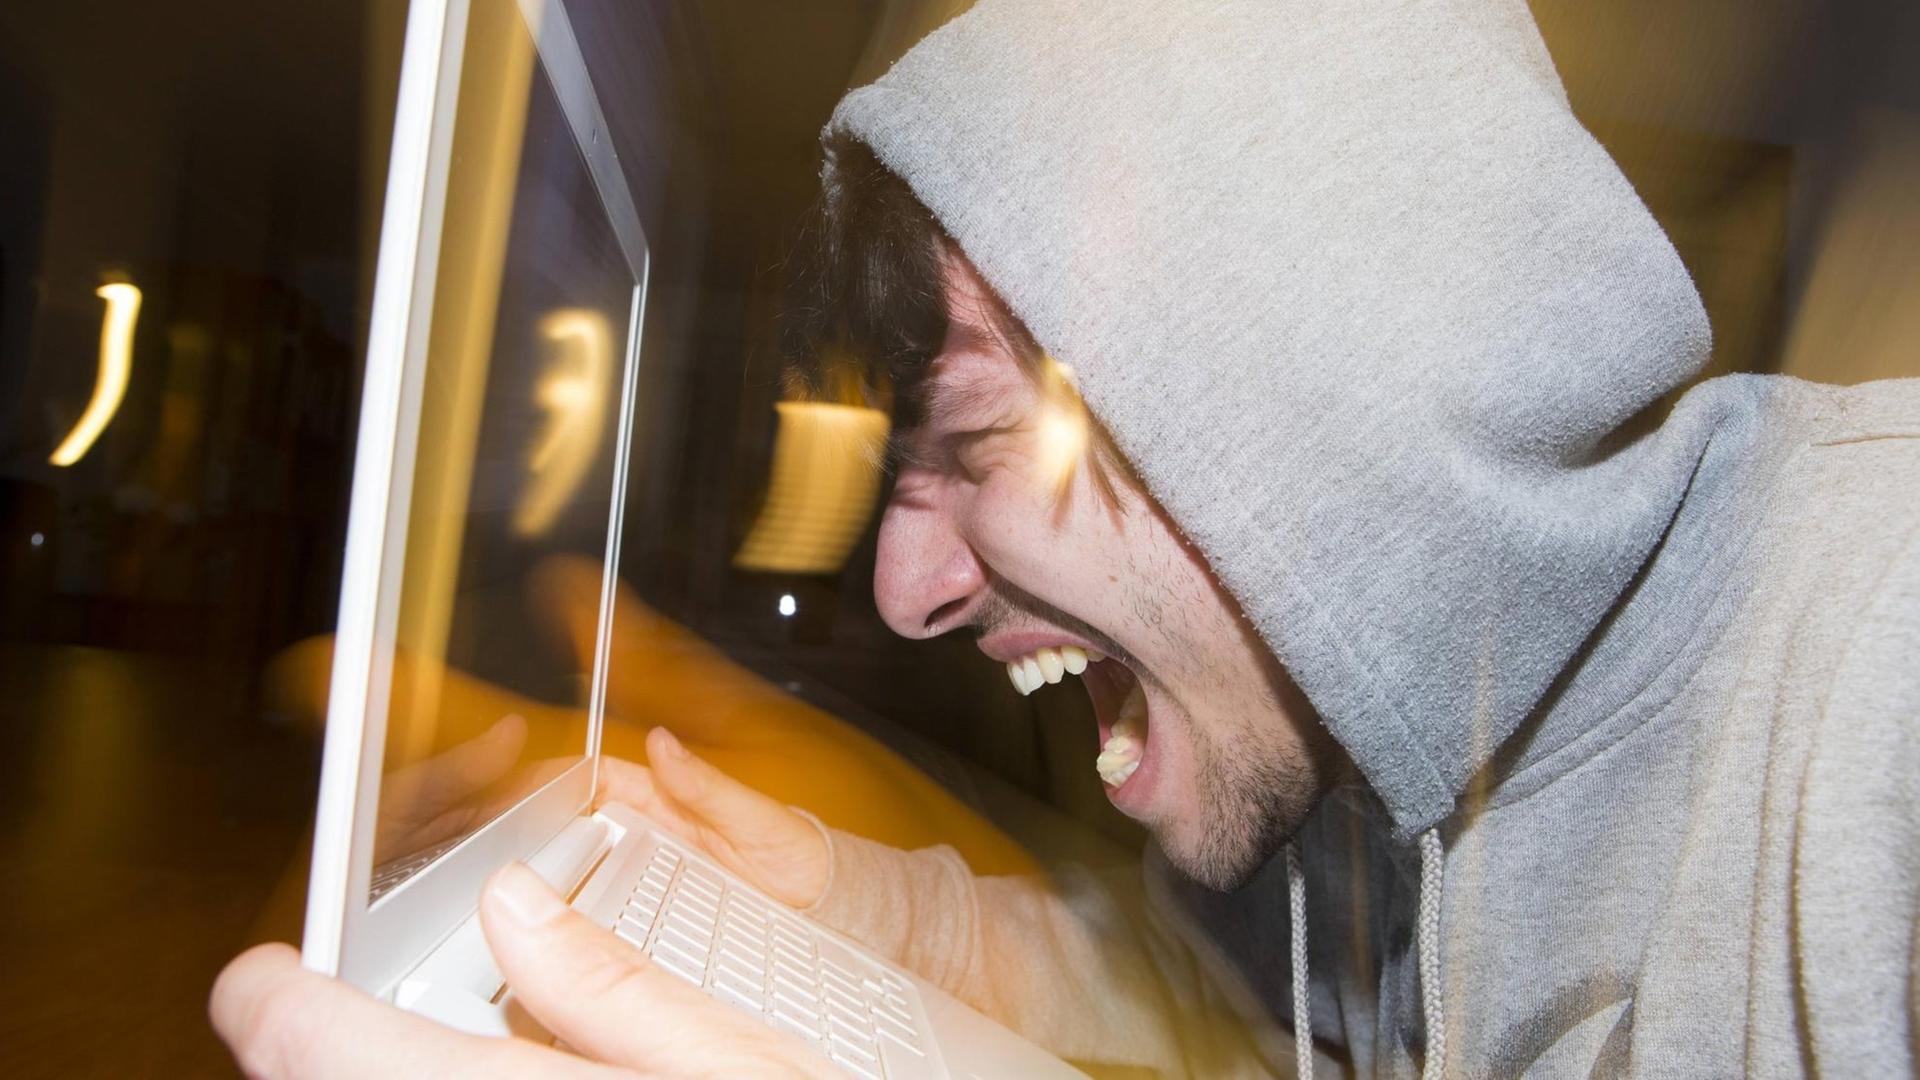 Ein junger Mann schreit seinen Laptop an